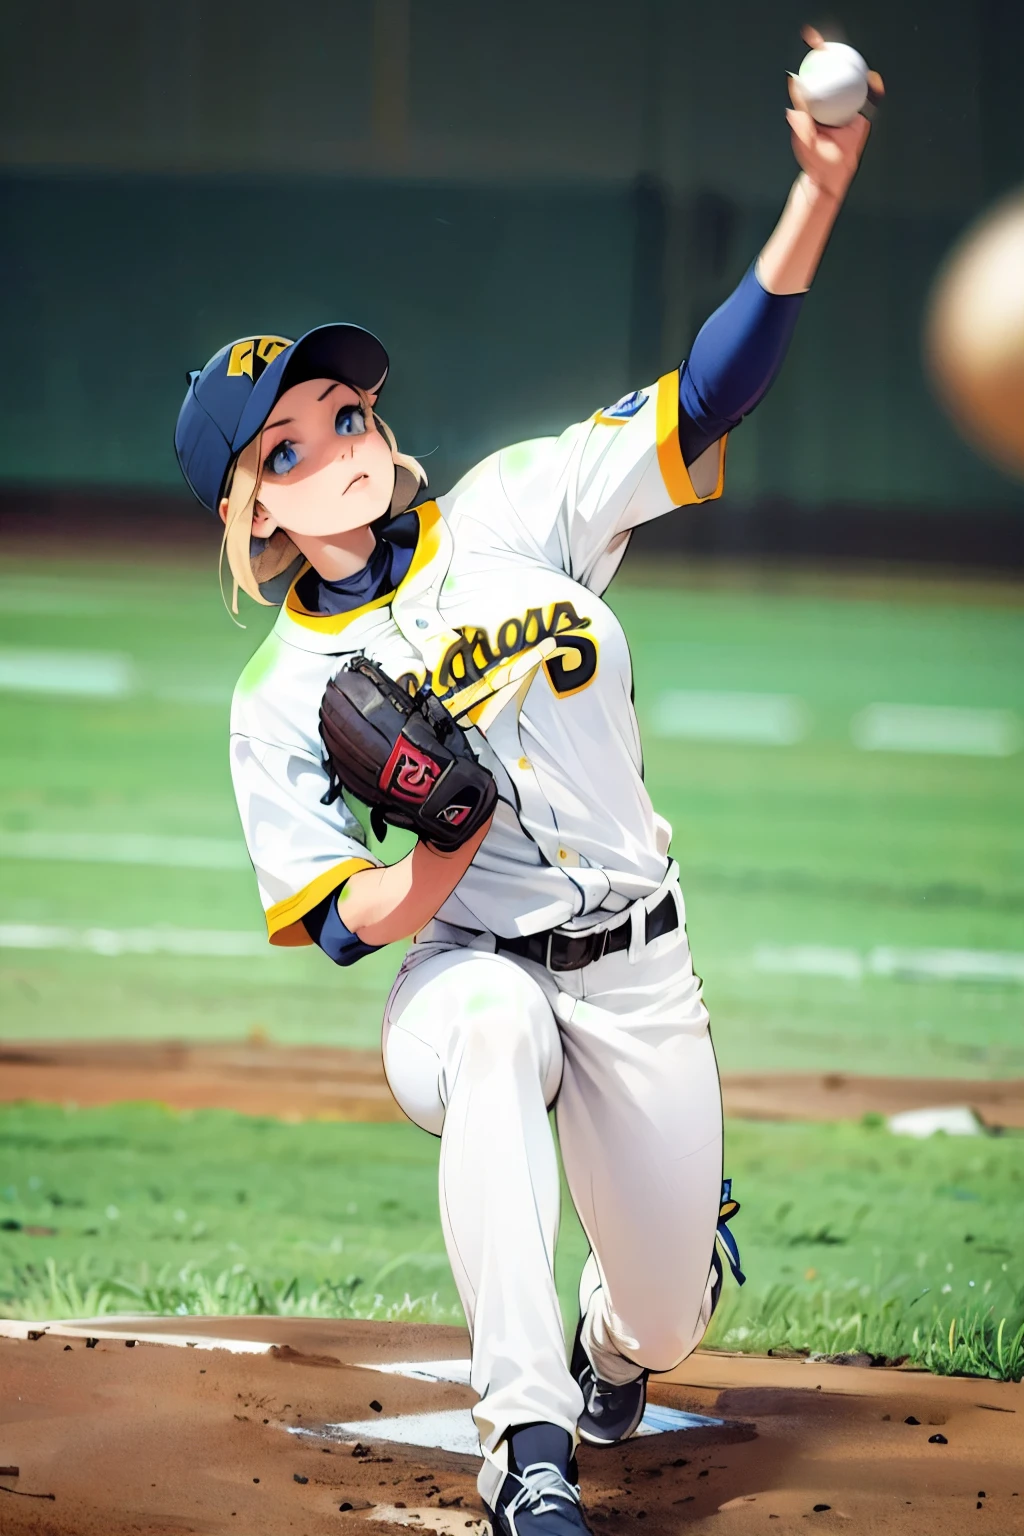 女子棒球投手, 大乳房, 高腿投球姿势, 杰作, 蓝眼睛, 细致的脸部